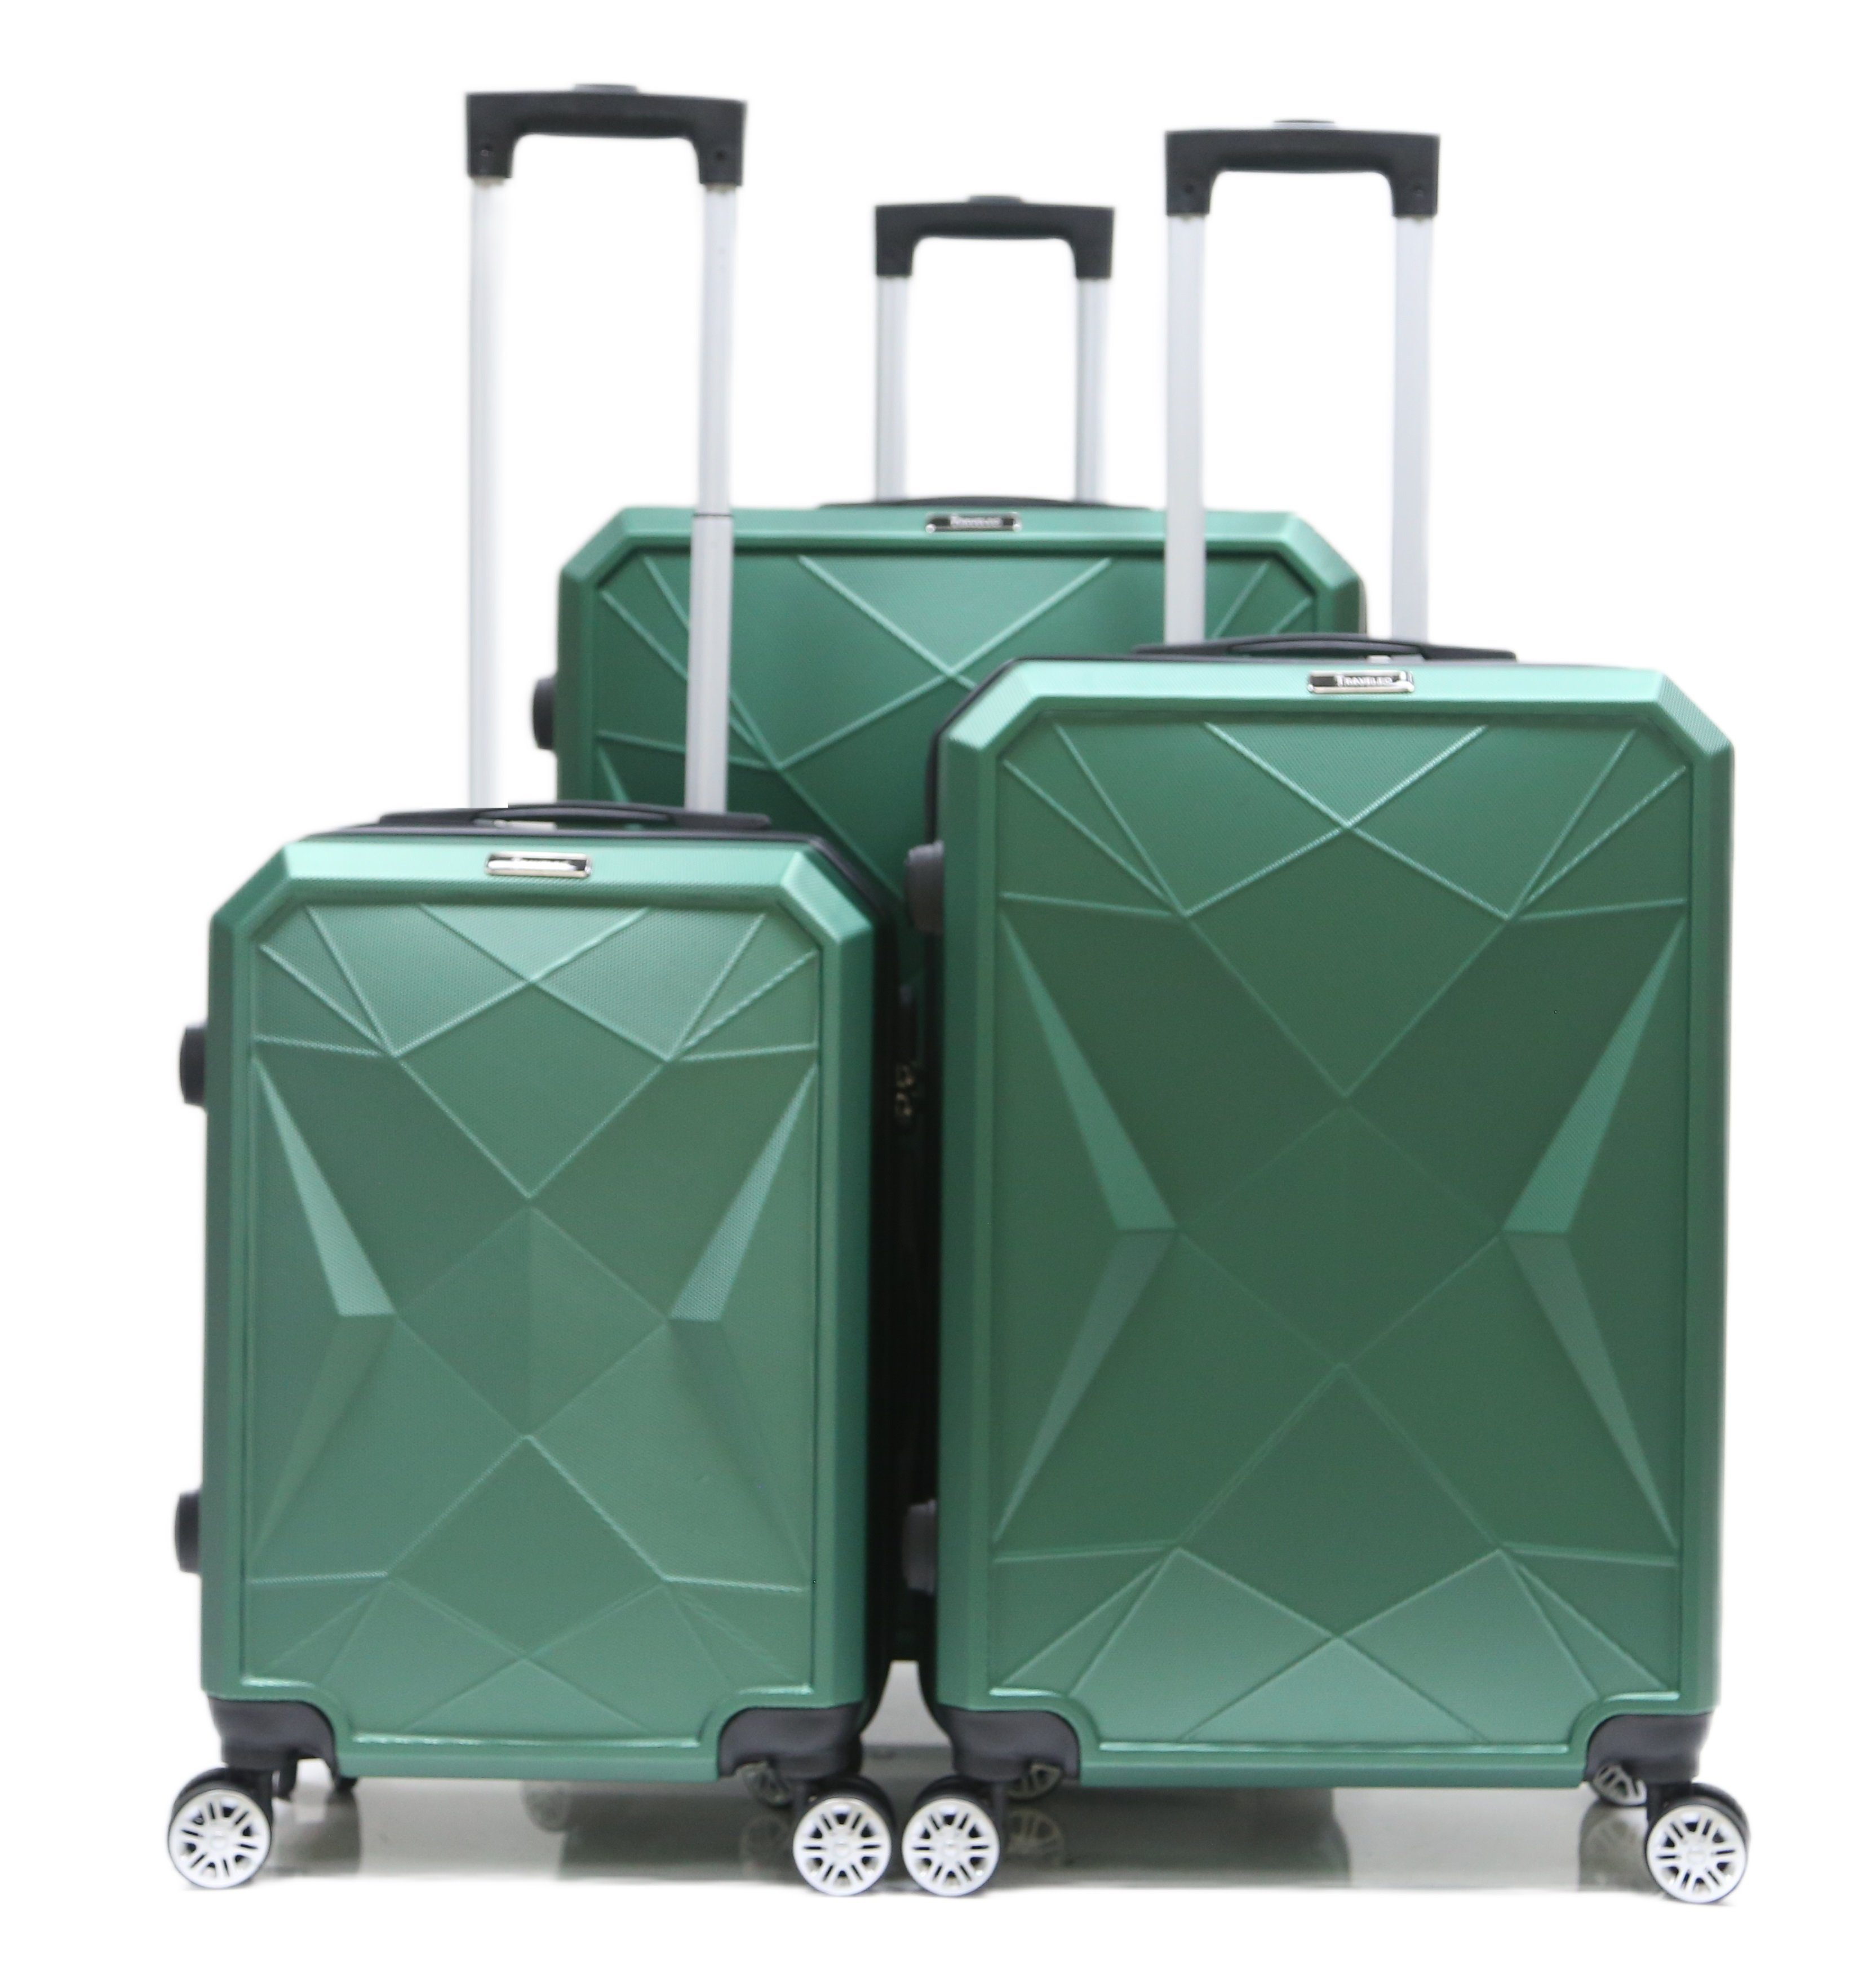 Cheffinger Kofferset Reisekoffer Set (3 Rollen, Grün ABS-03 4 Hartschale Koffer Kofferset, tlg) 3-teilig Trolley